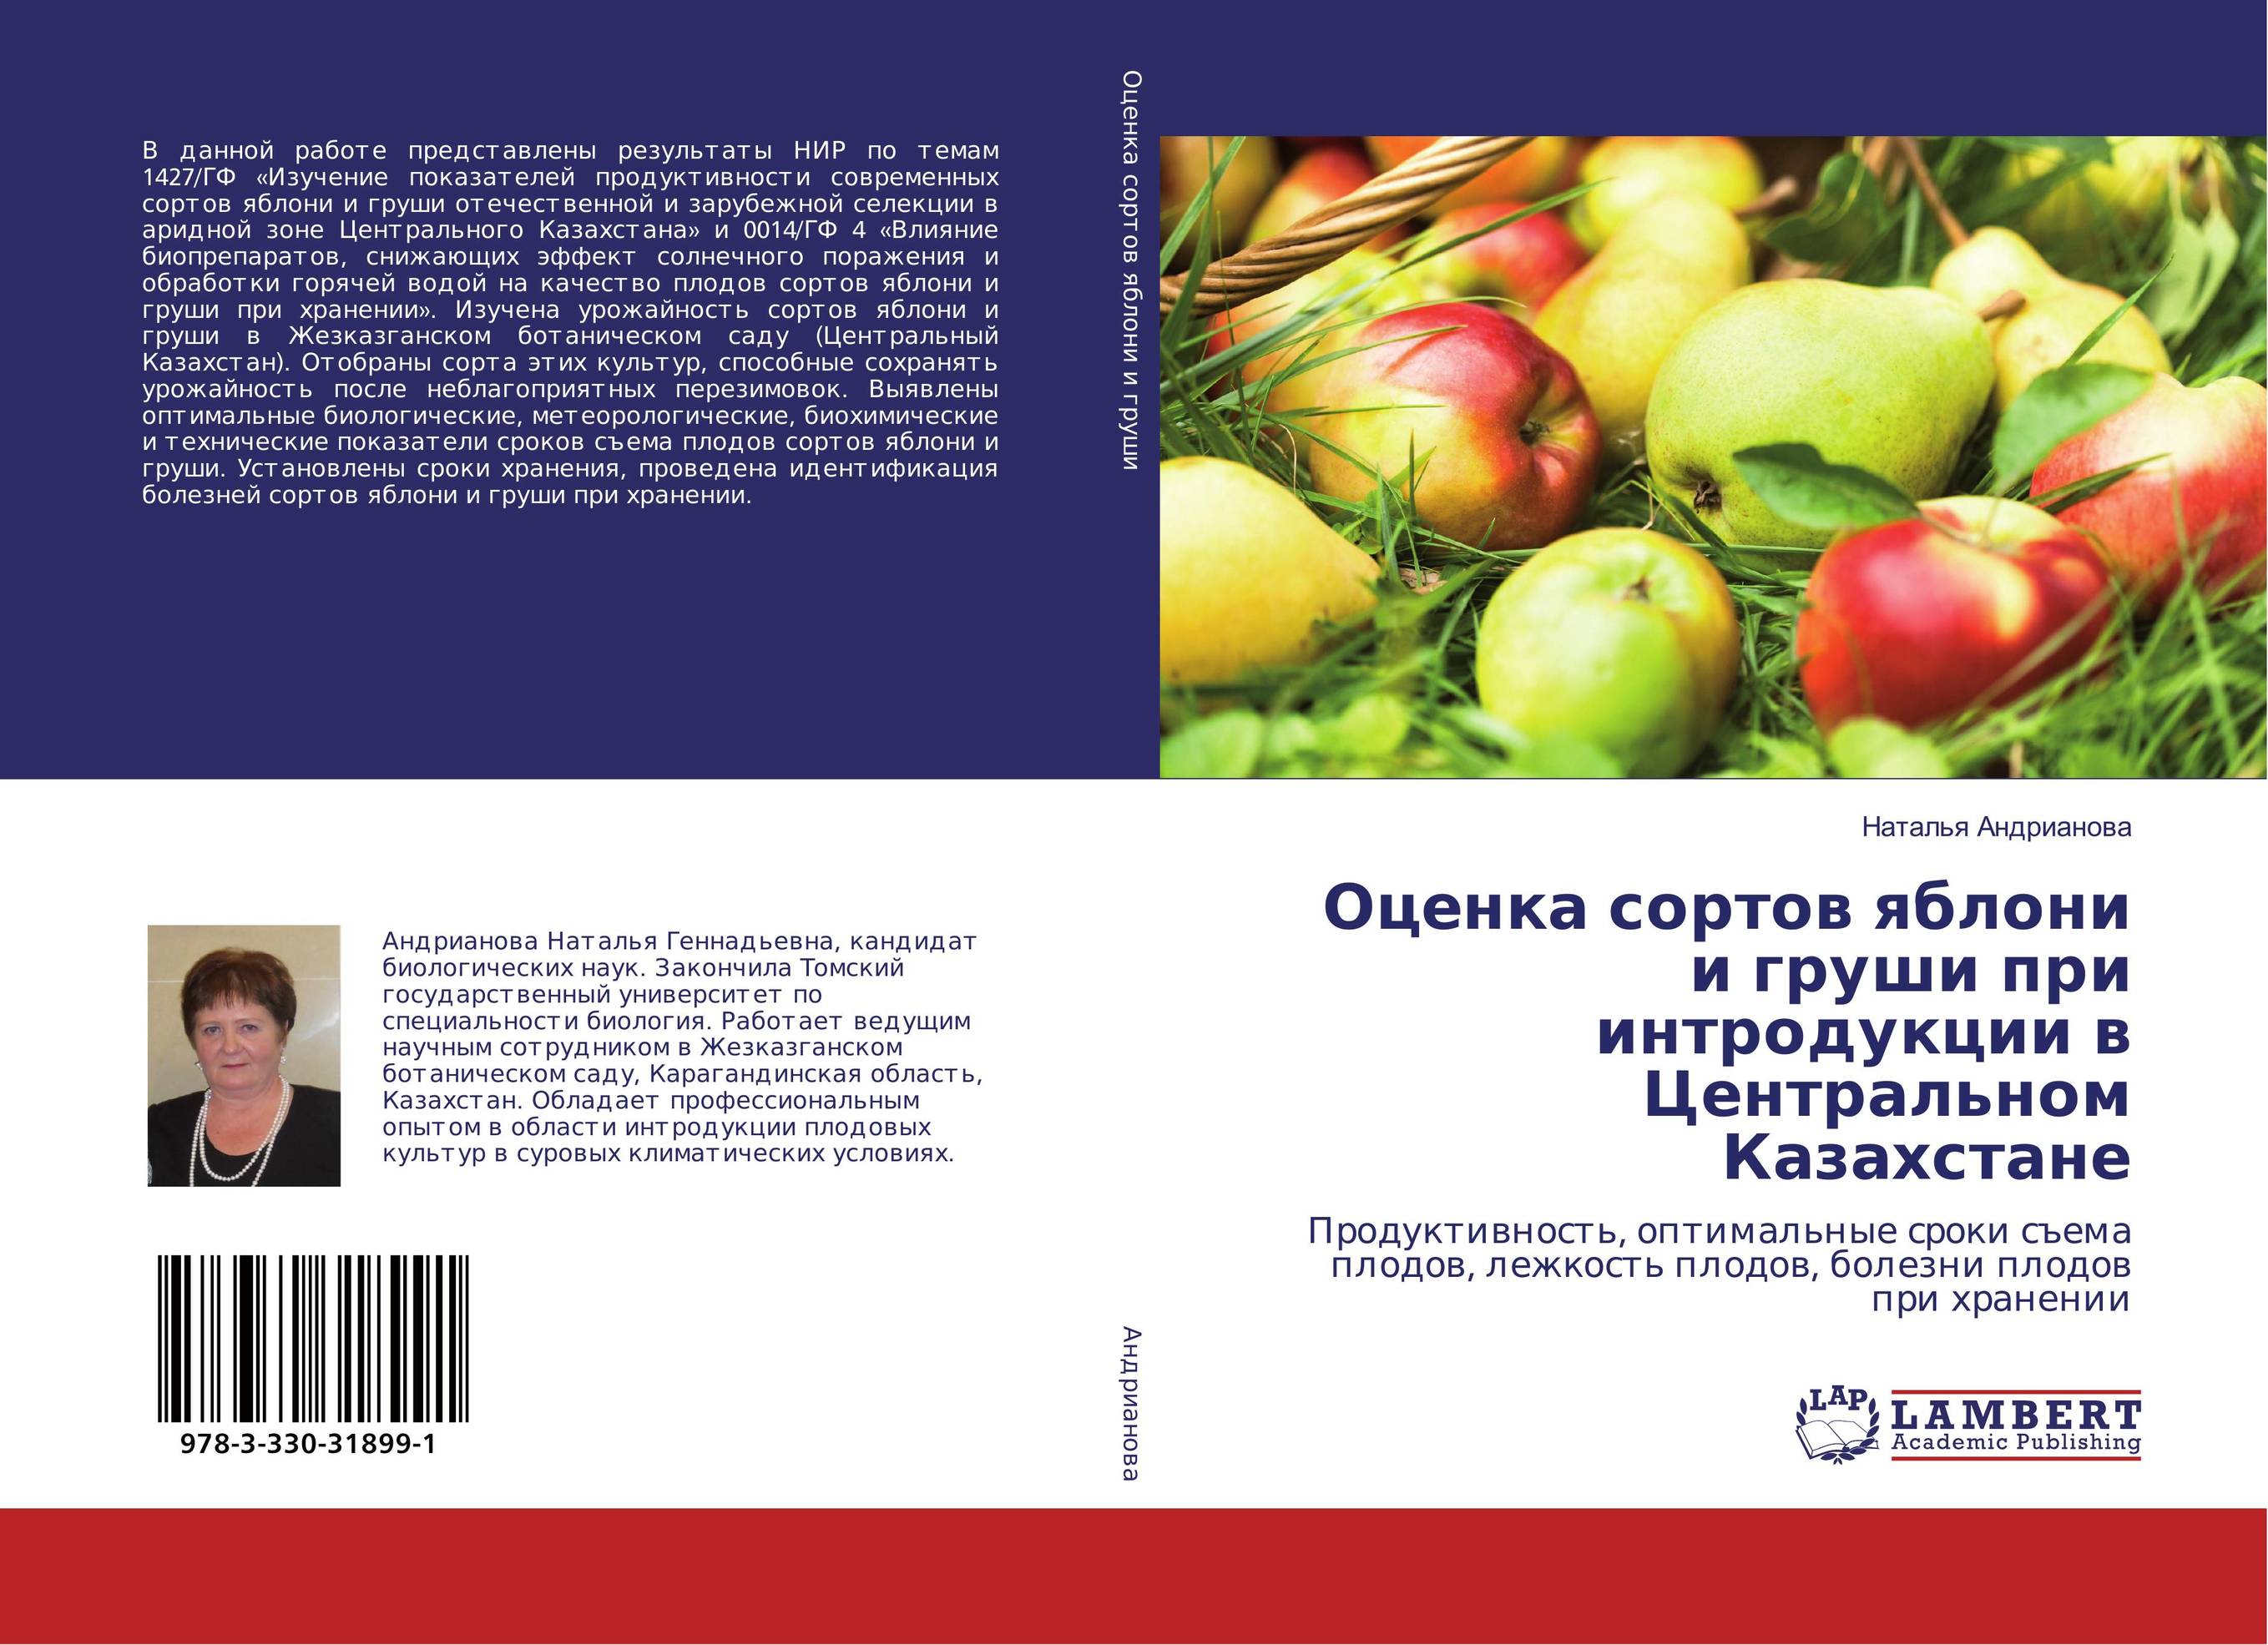 
        Оценка сортов яблони и груши при интродукции в Центральном Казахстане. Продуктивность, оптимальные сроки съема плодов, лежкость плодов, болезни плодов при хранении.
      